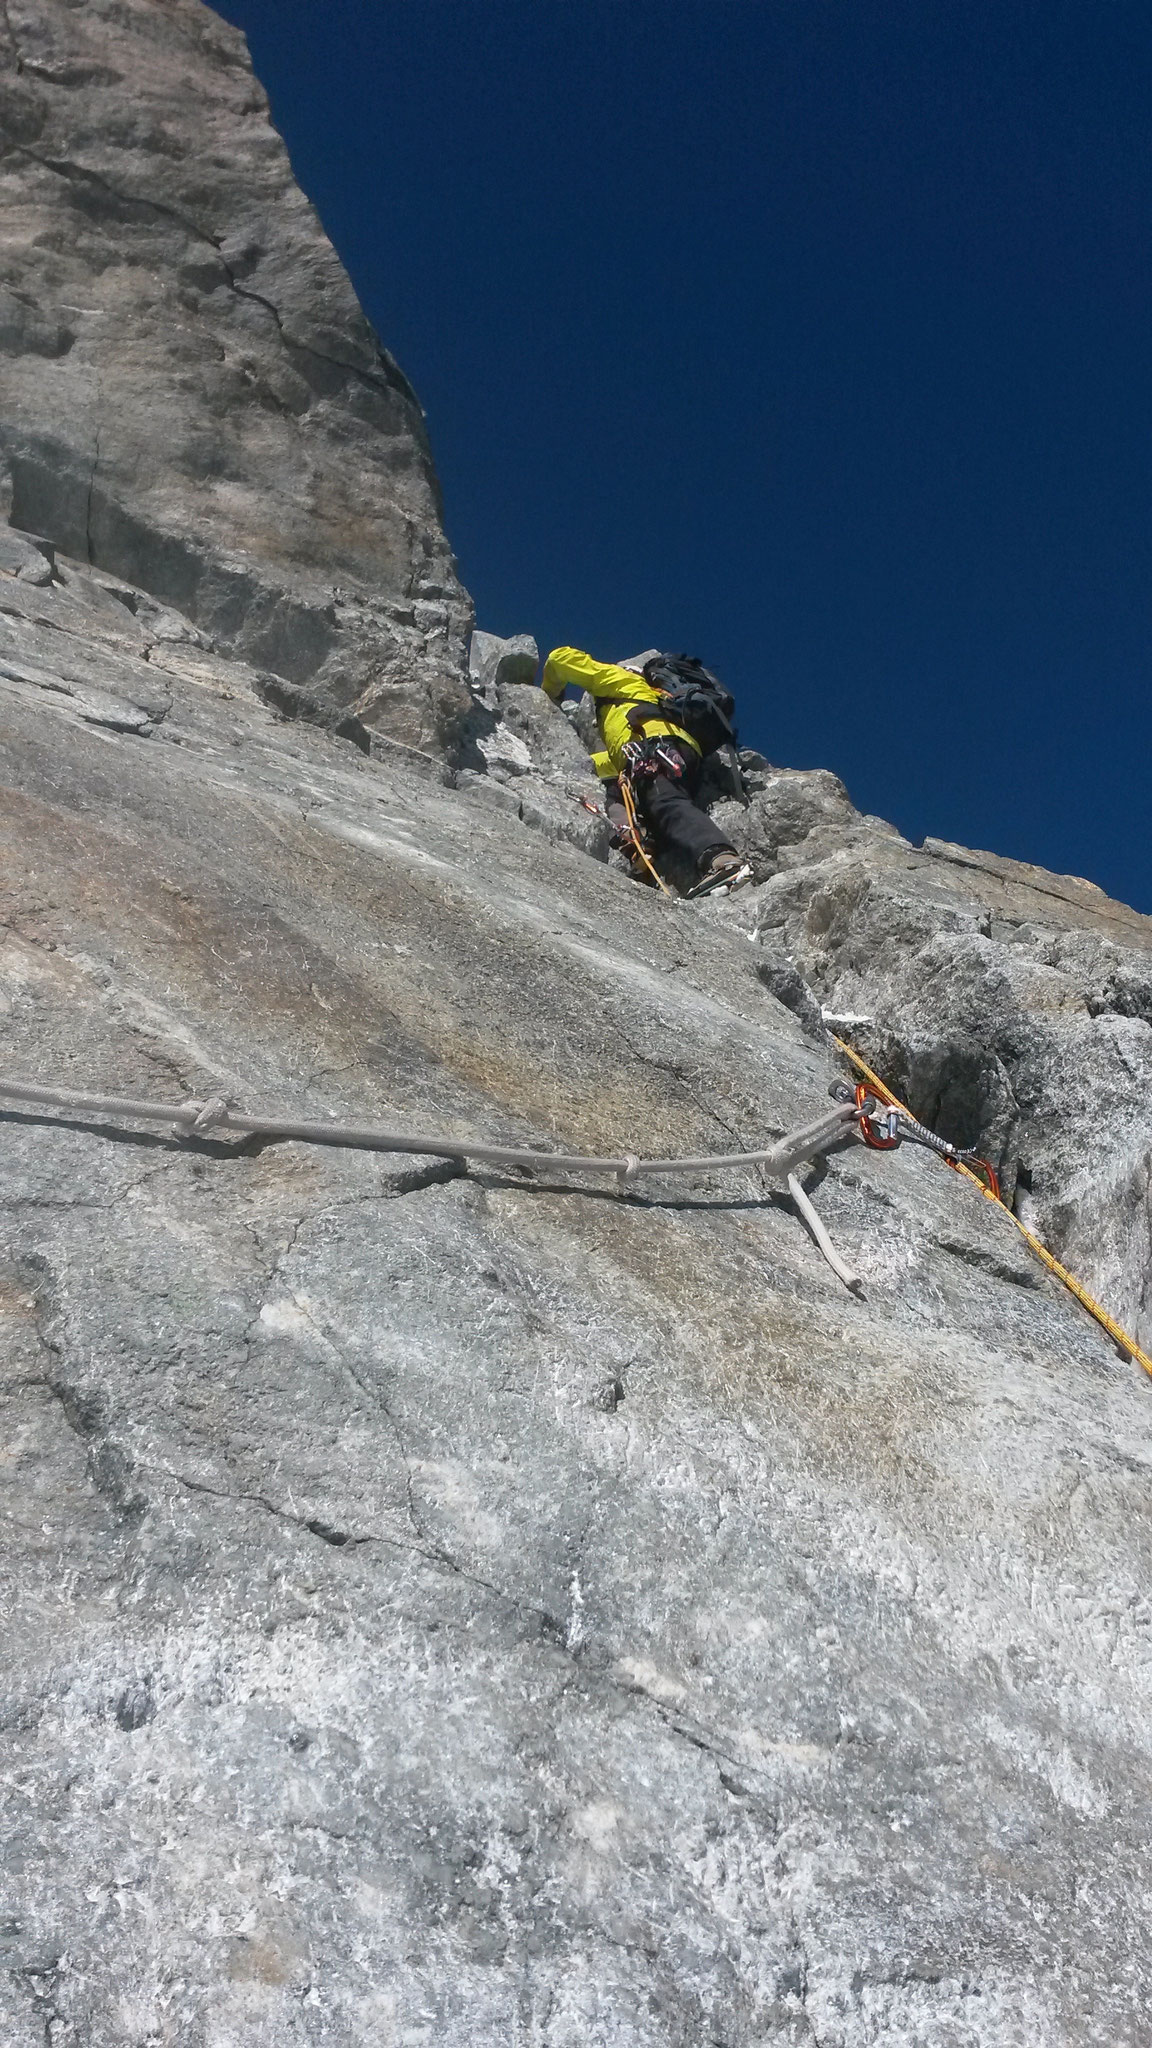 Gisi im Vorstieg in der Felsbarriere Klettern 3a